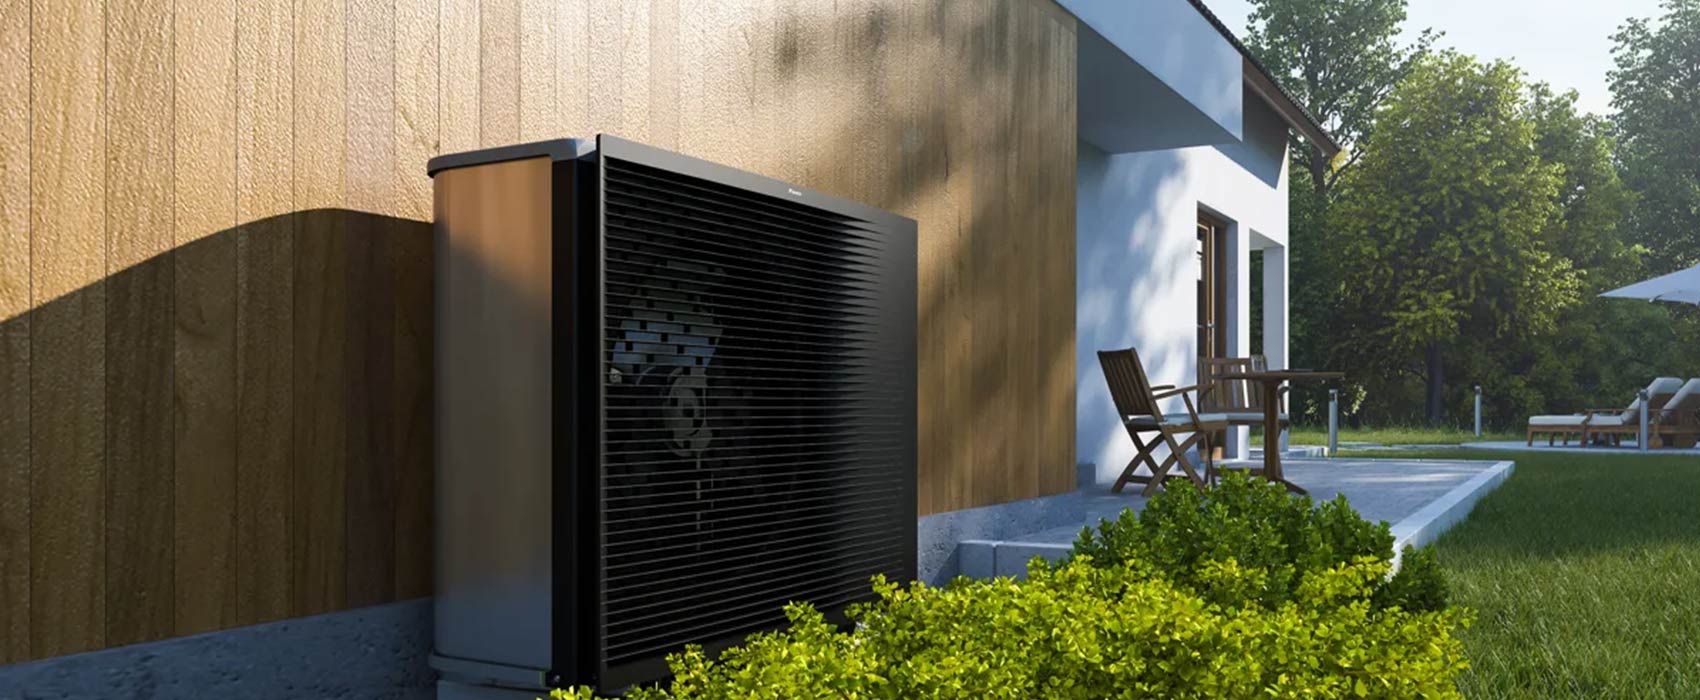 Air Energie, installateur Daikin pour pompe à chaleur et climatisation Bordeaux, Lyon, Clermont-Ferrand.